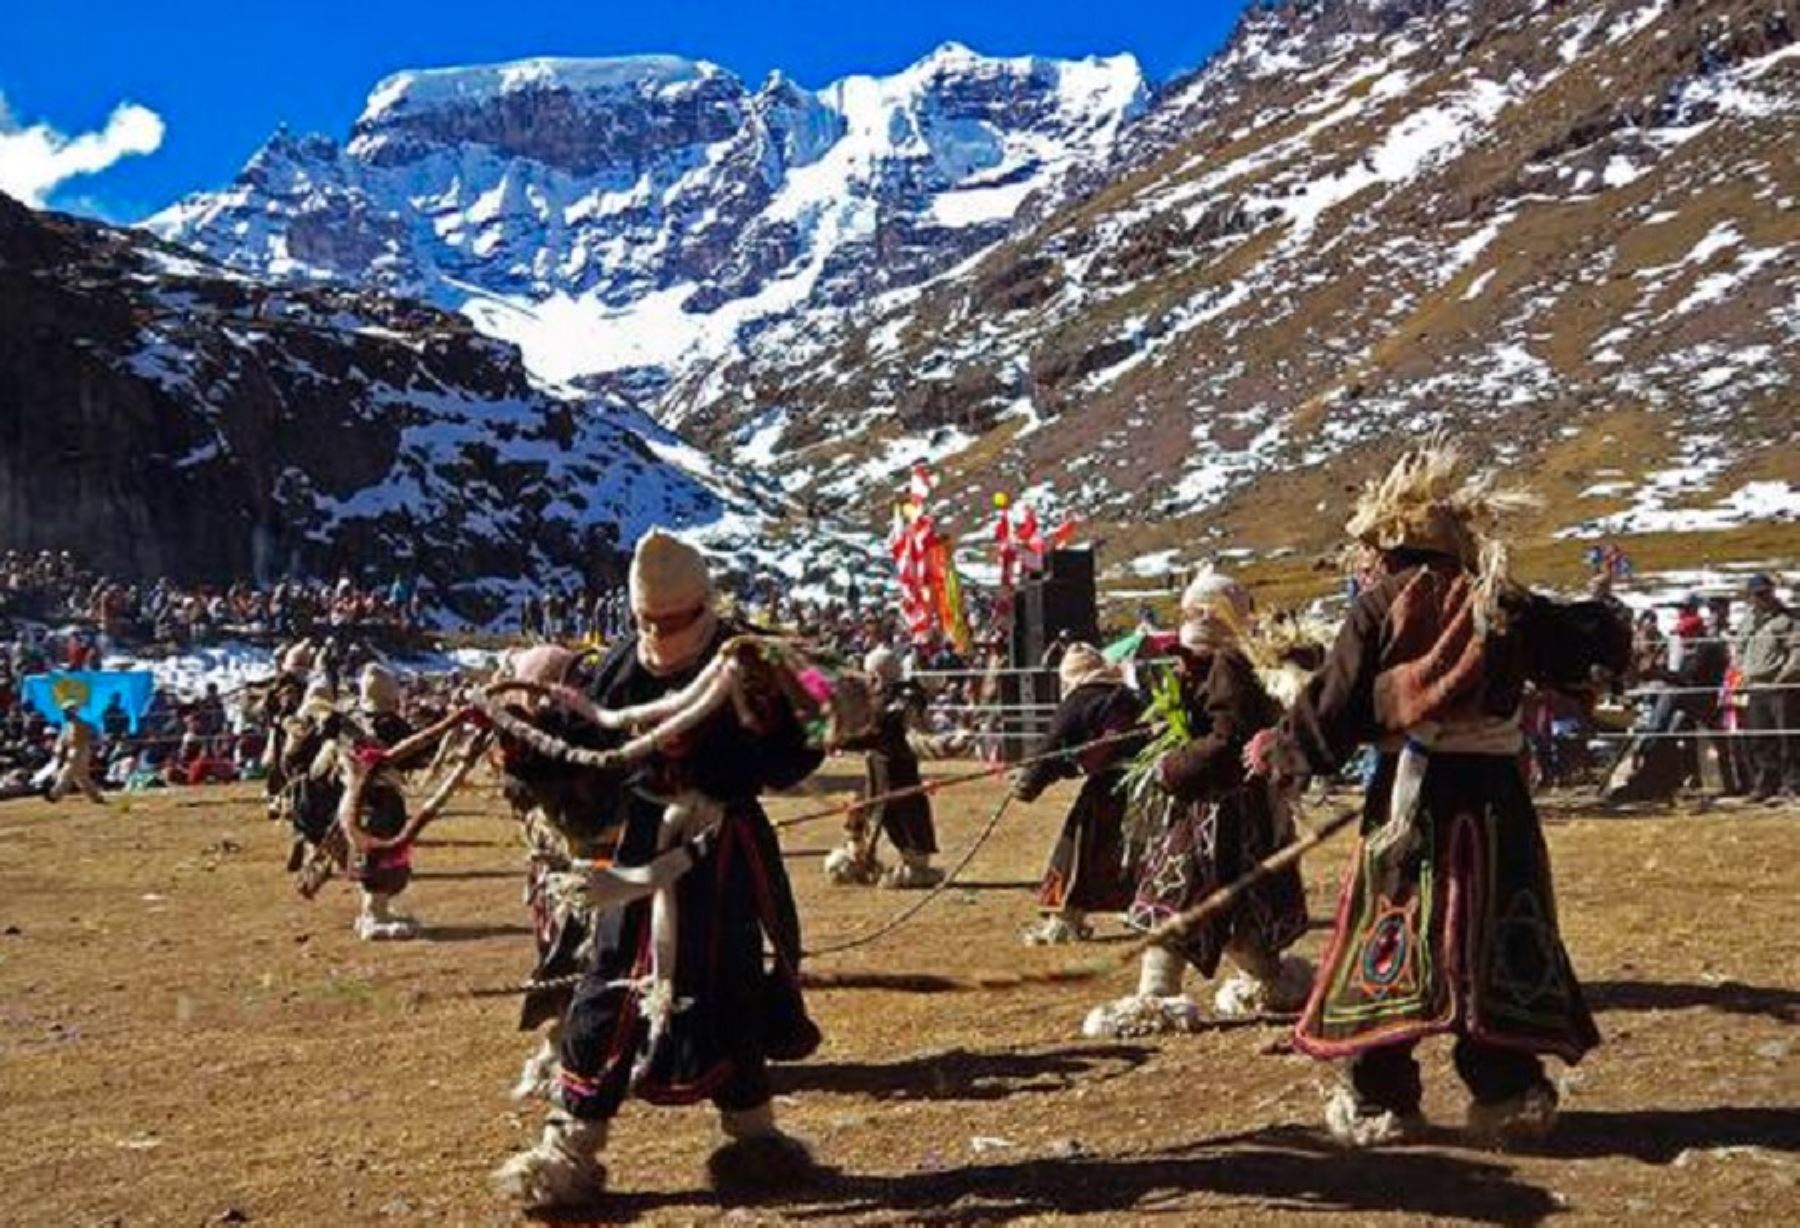 Allincápac Raymi: así se celebra el Día del Campesino al pie del imponente nevado en Puno